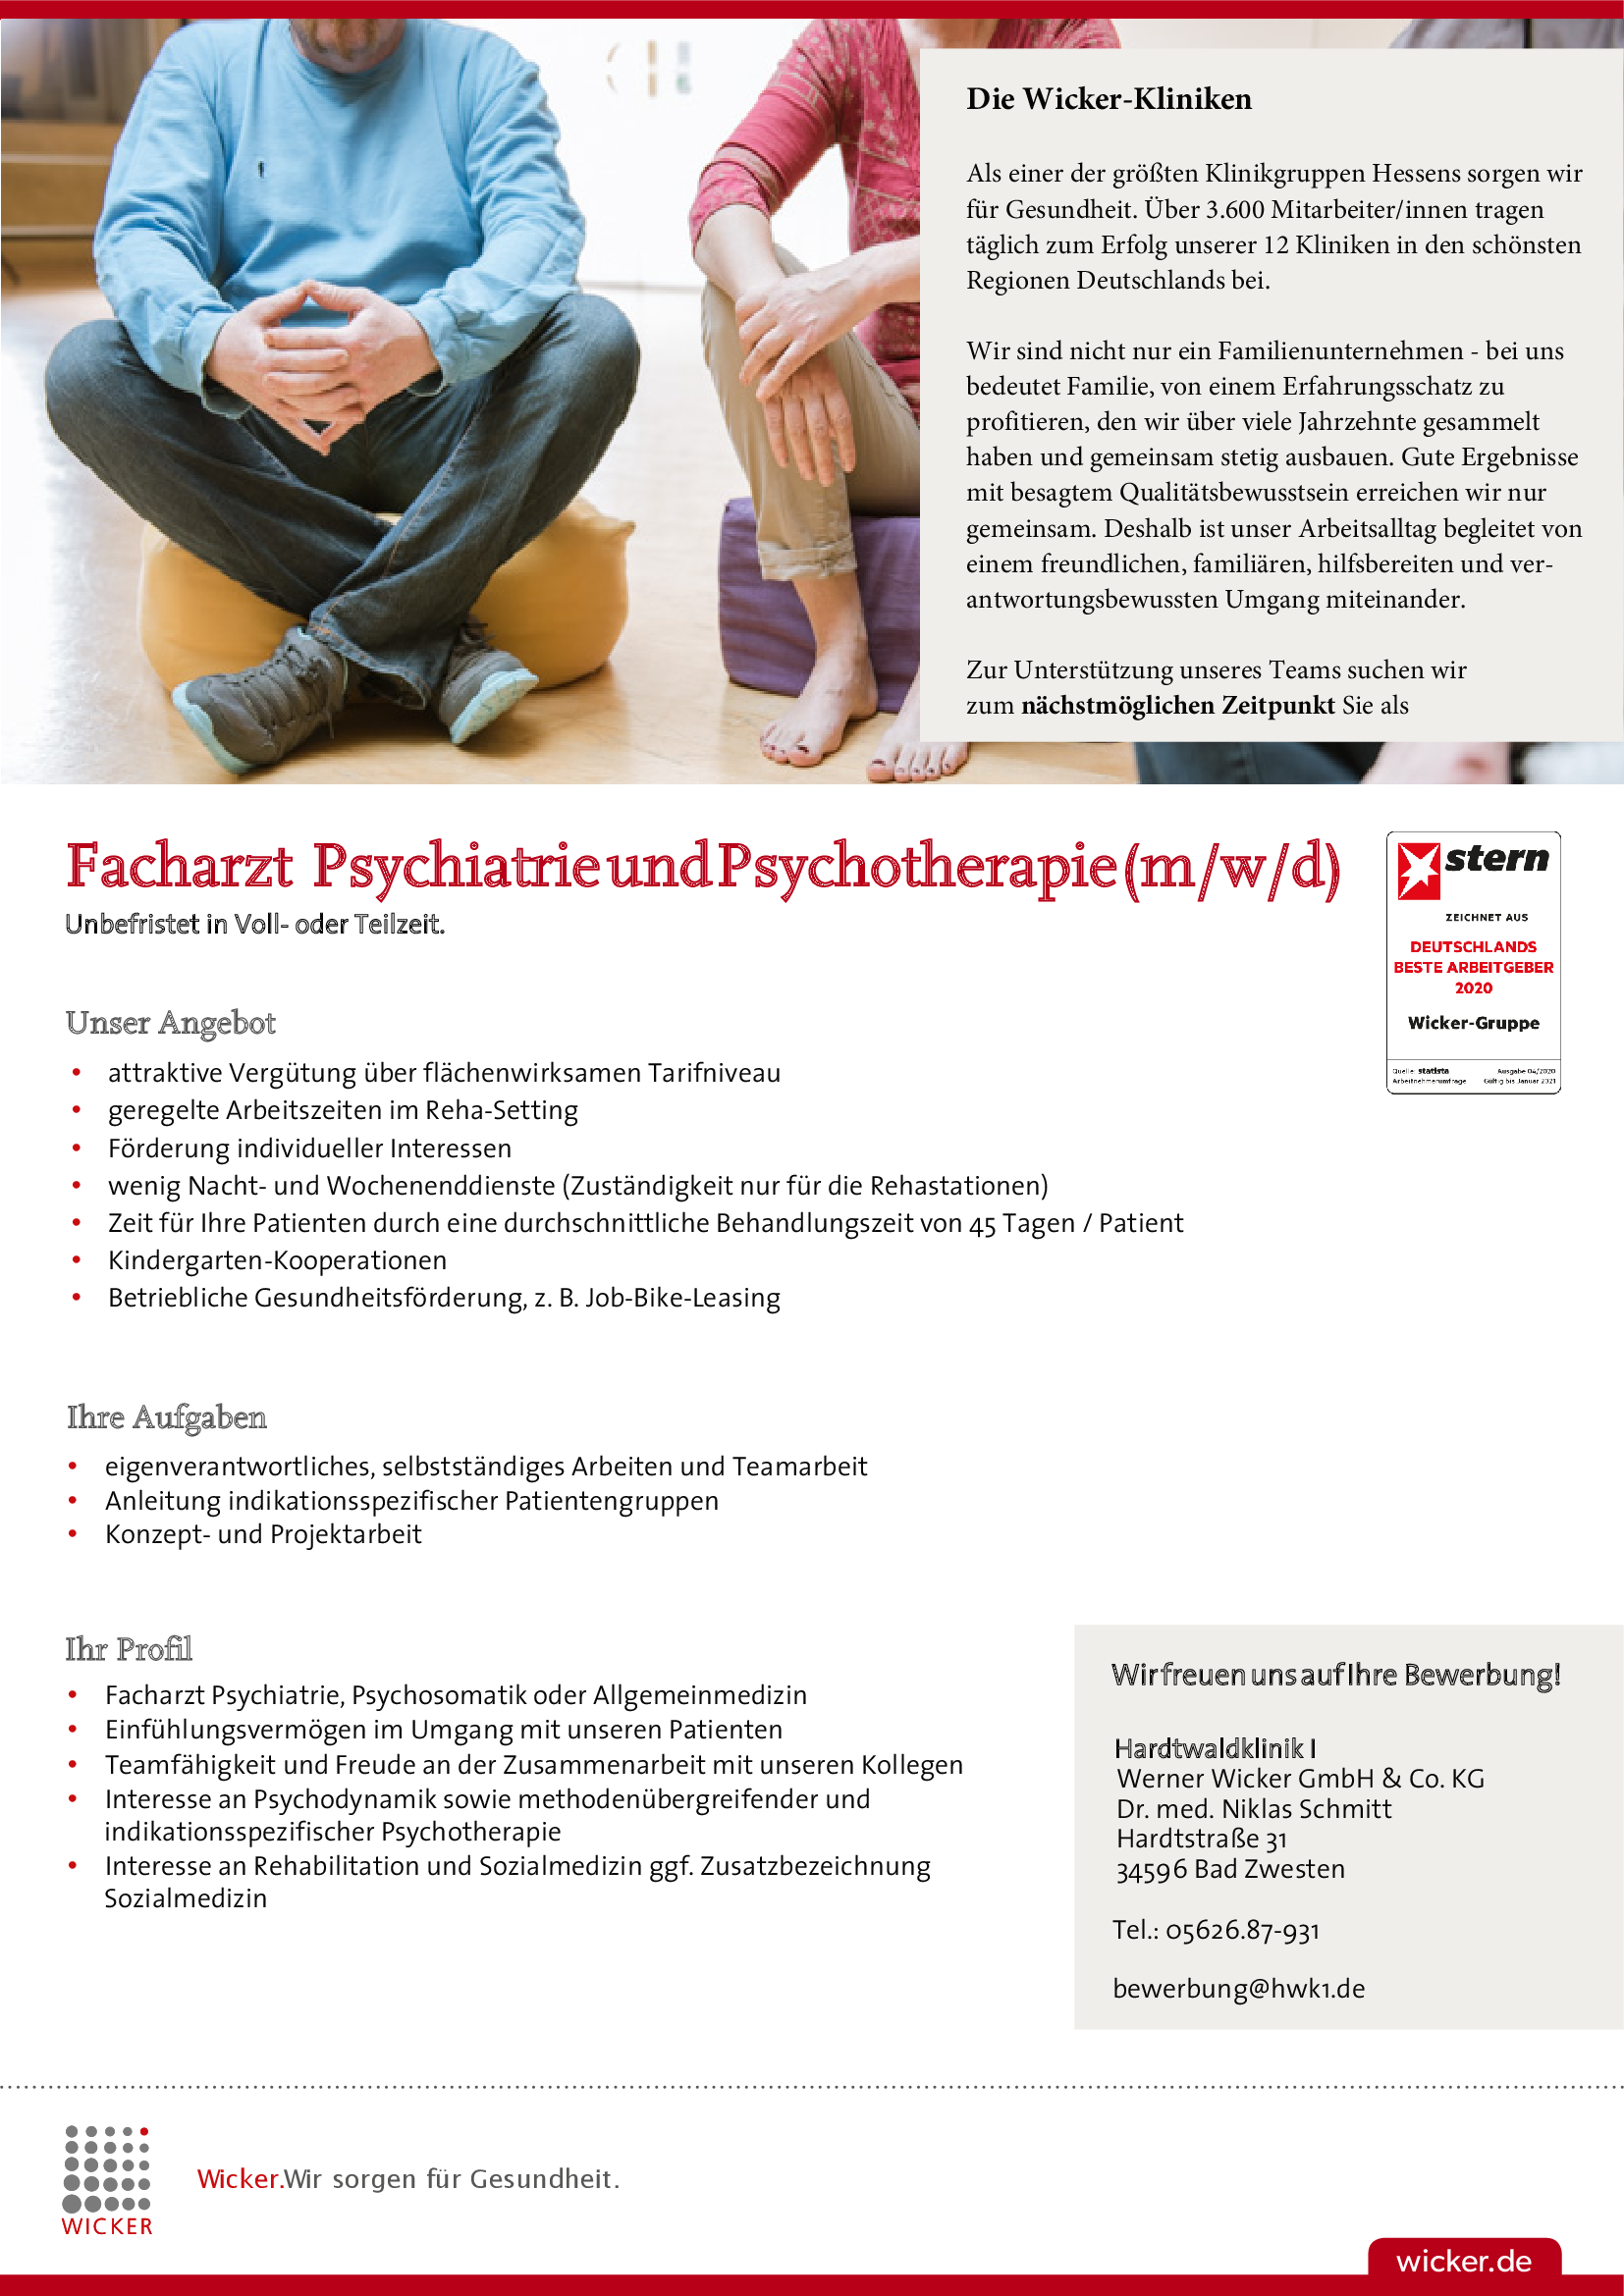 Hardtwaldklinik I: Facharzt Psychiatrie und Psychotherapie (m/w/d)